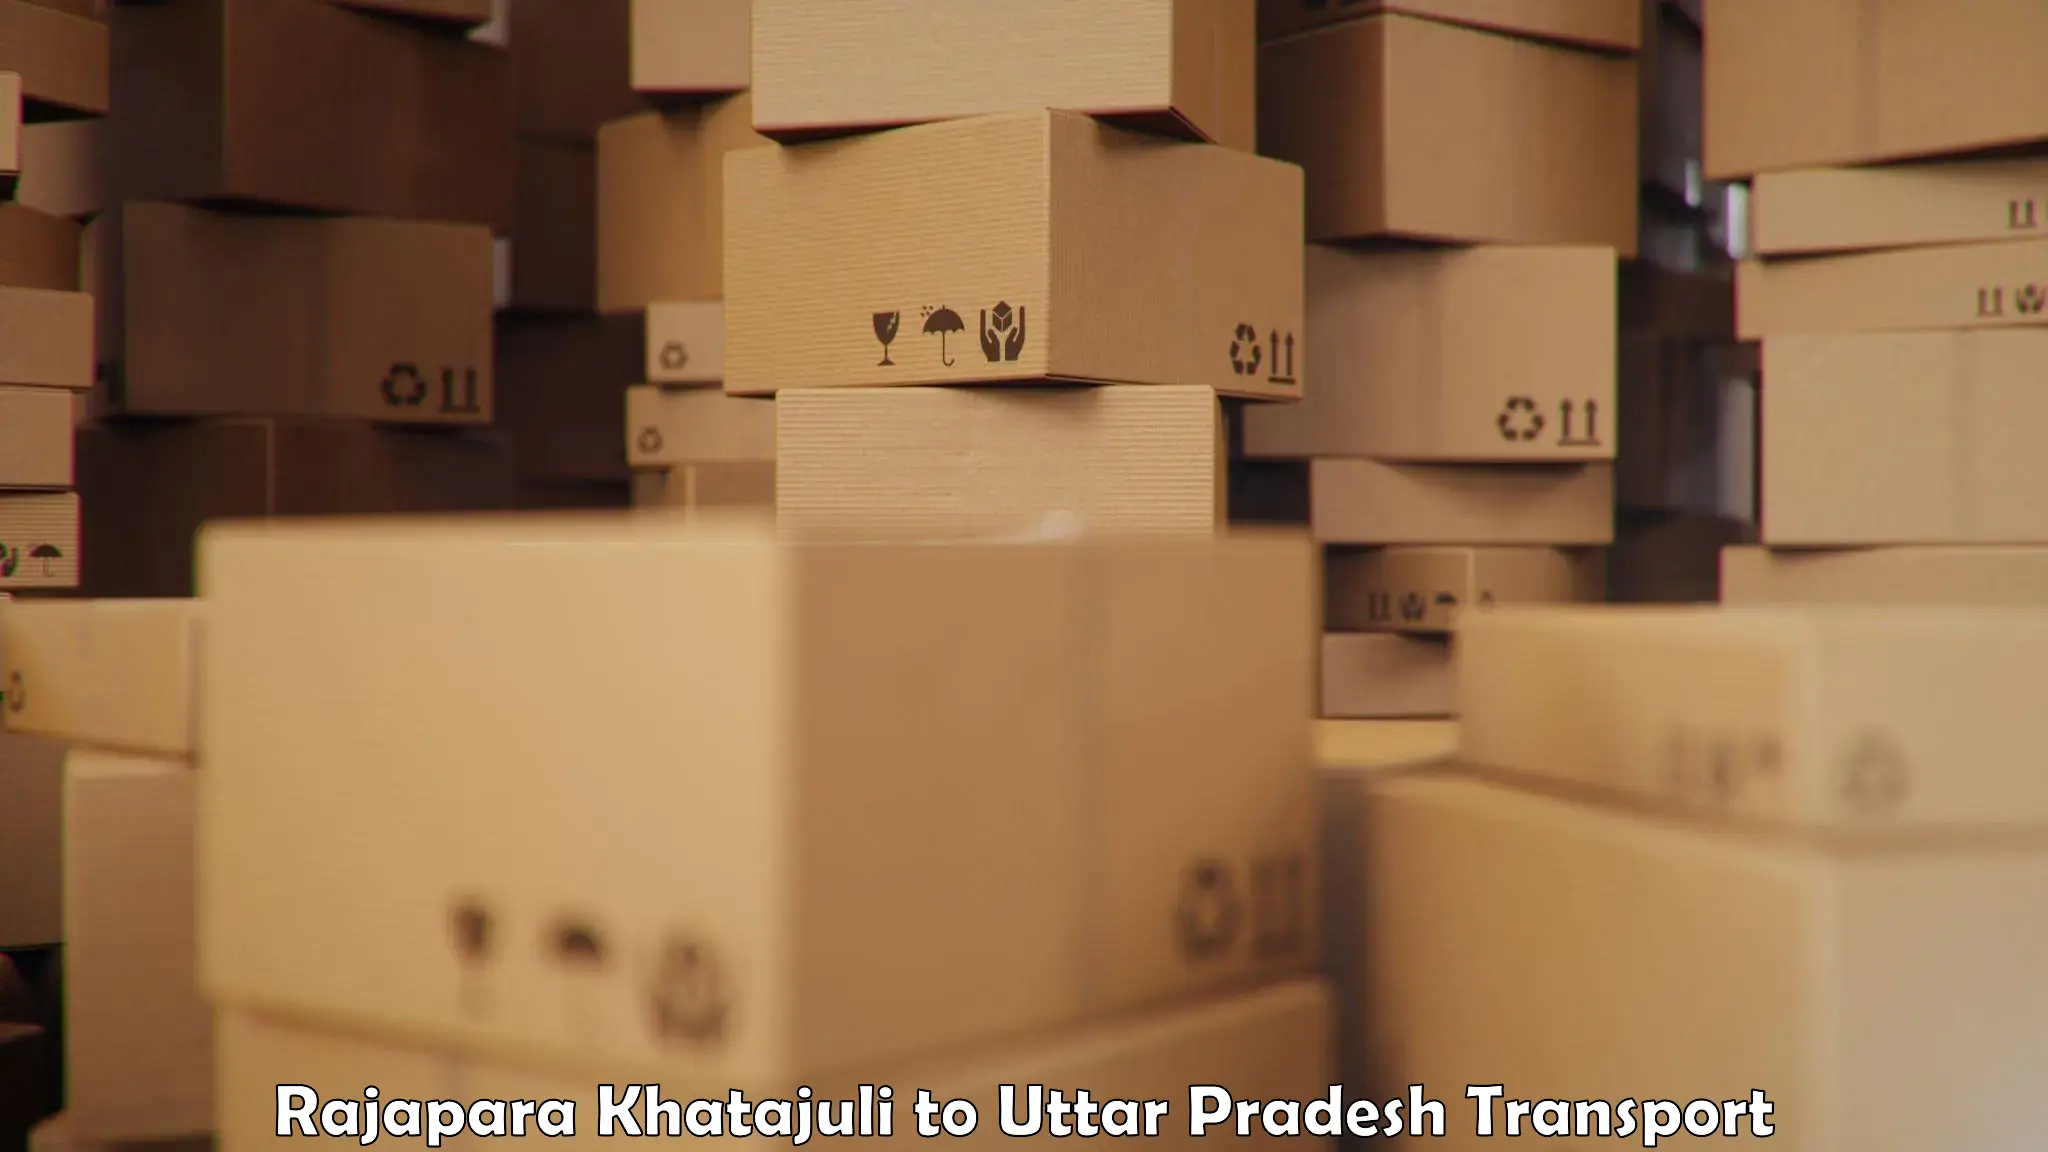 Furniture transport service Rajapara Khatajuli to Mehnagar